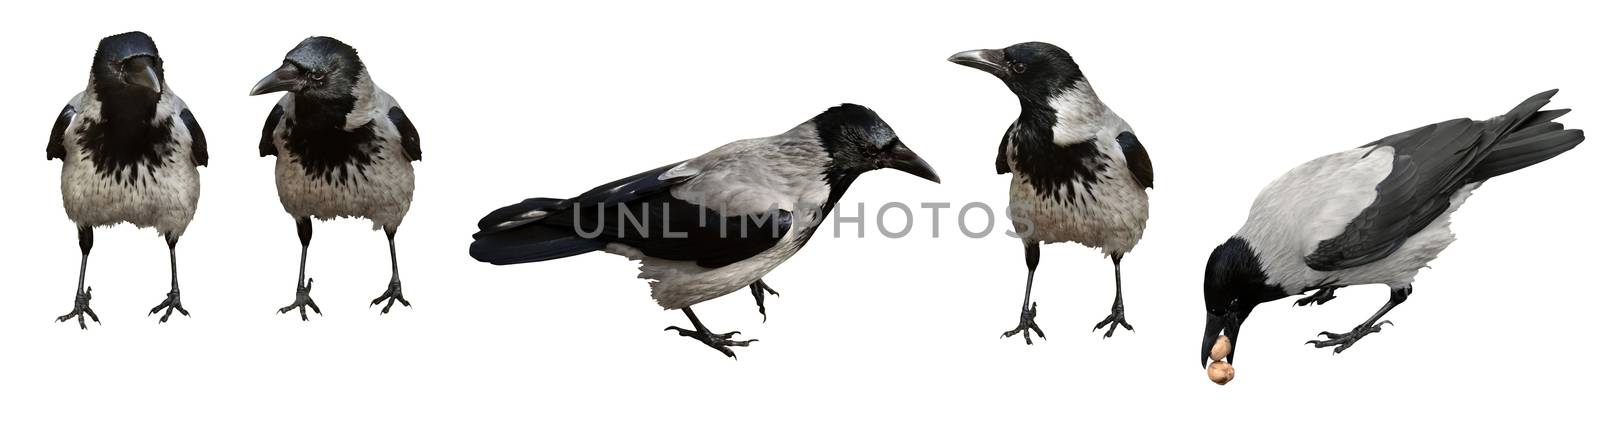 Crows by Vectorex